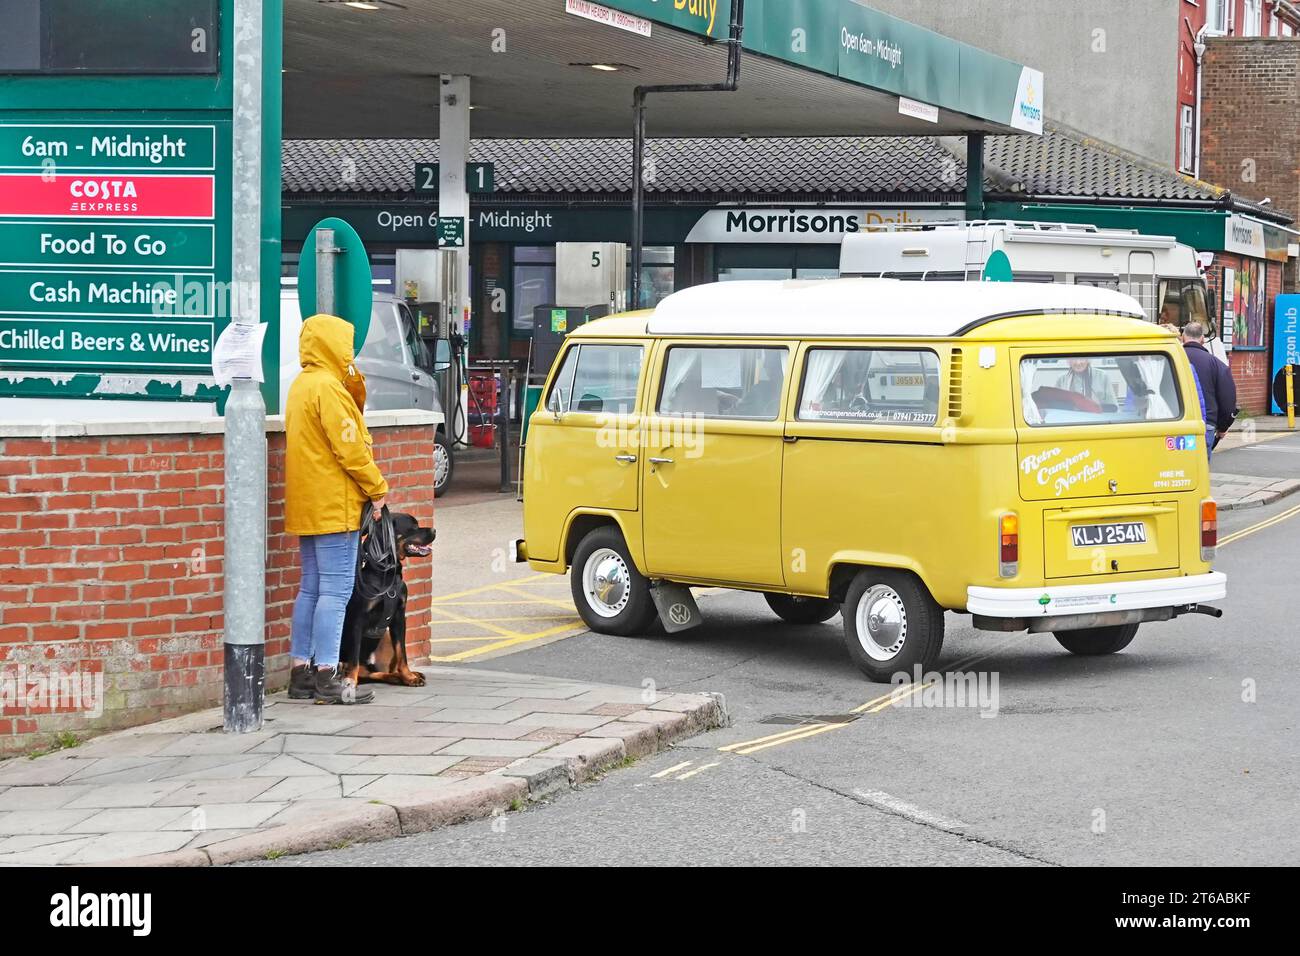 Morrisons Daily Shop e stazione di rifornimento carburante crossover e negozio di cibo da asporto VW Volkswagen camper gialli, camper, camper, camper e cani che aspettano di attraversare Cromer UK Foto Stock